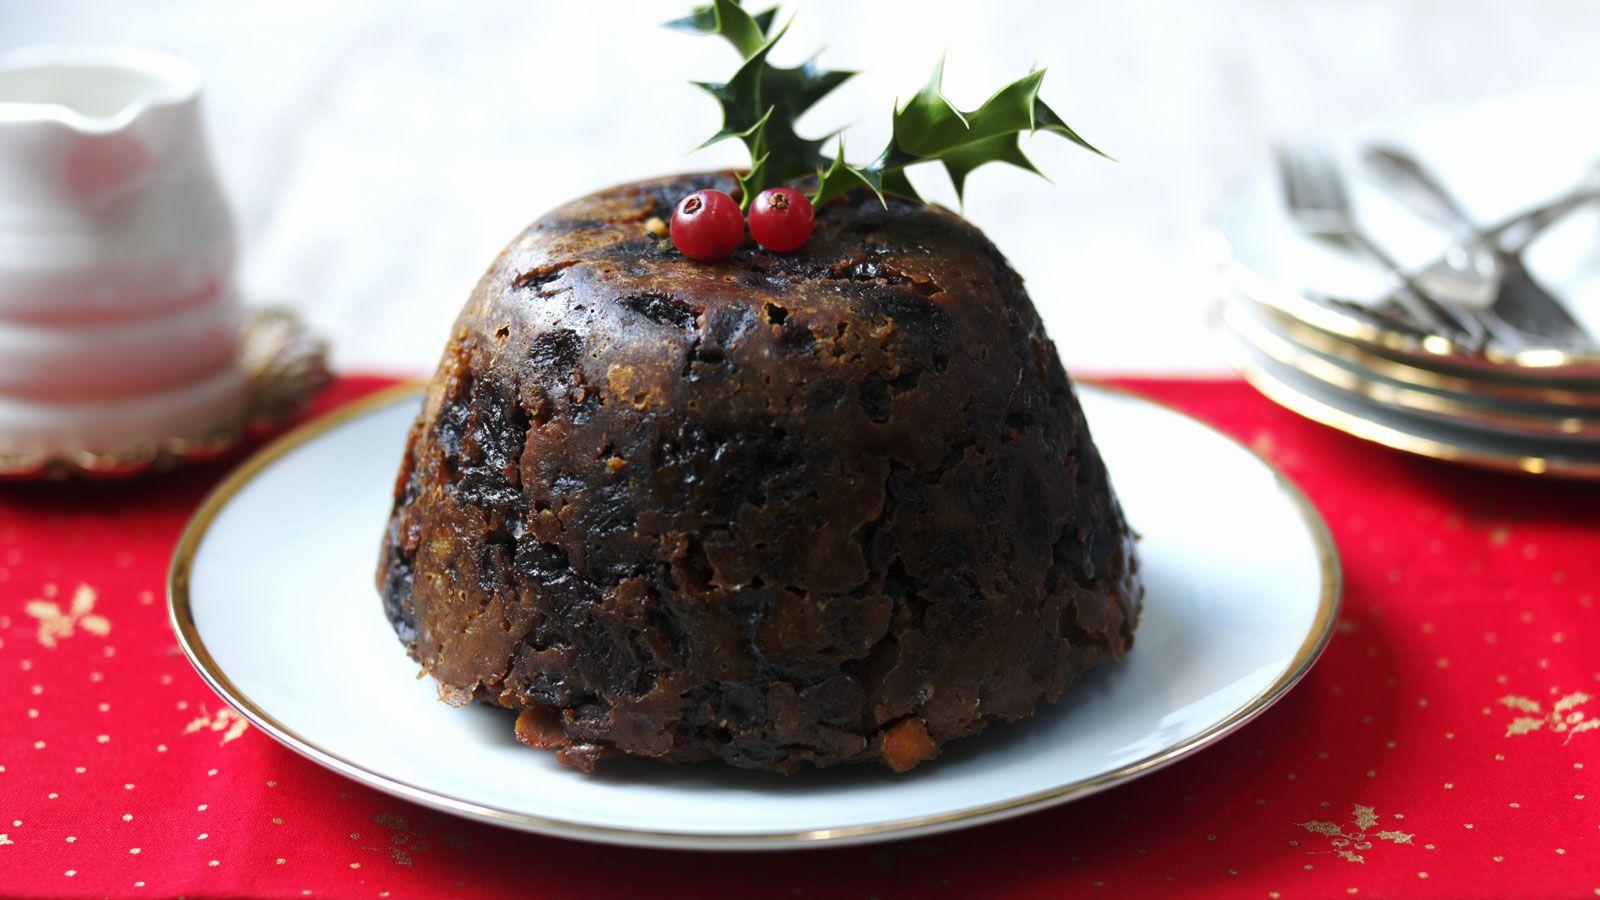 How to make Christmas pudding recipe